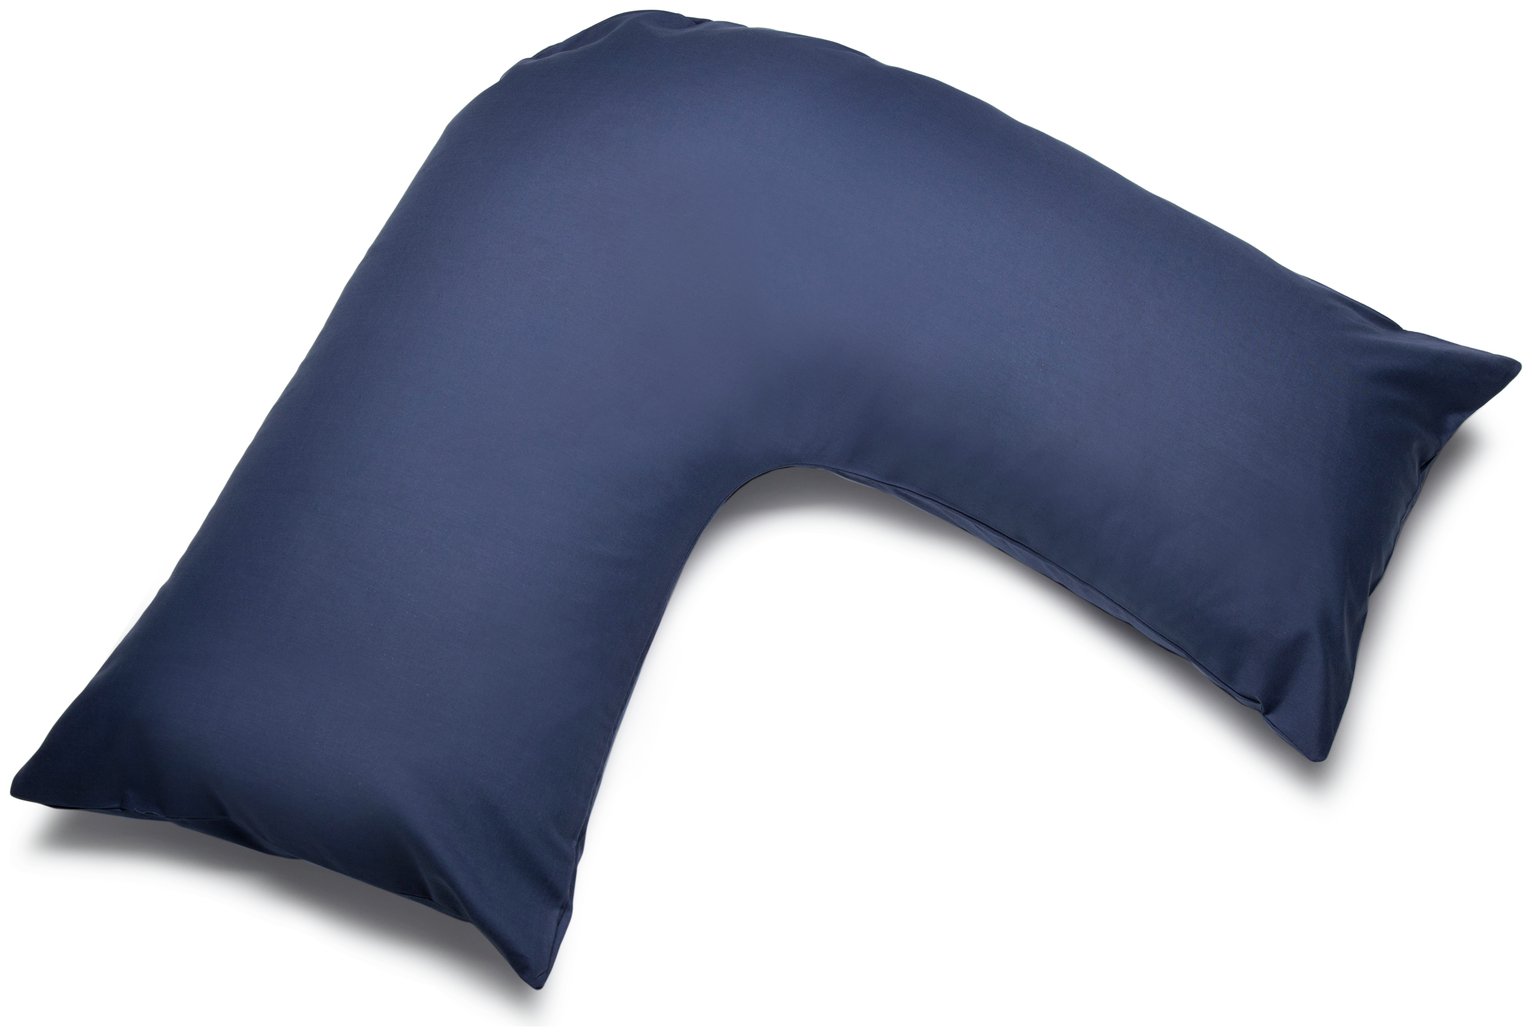 Belledorm V-Shaped Pillowcase - Navy